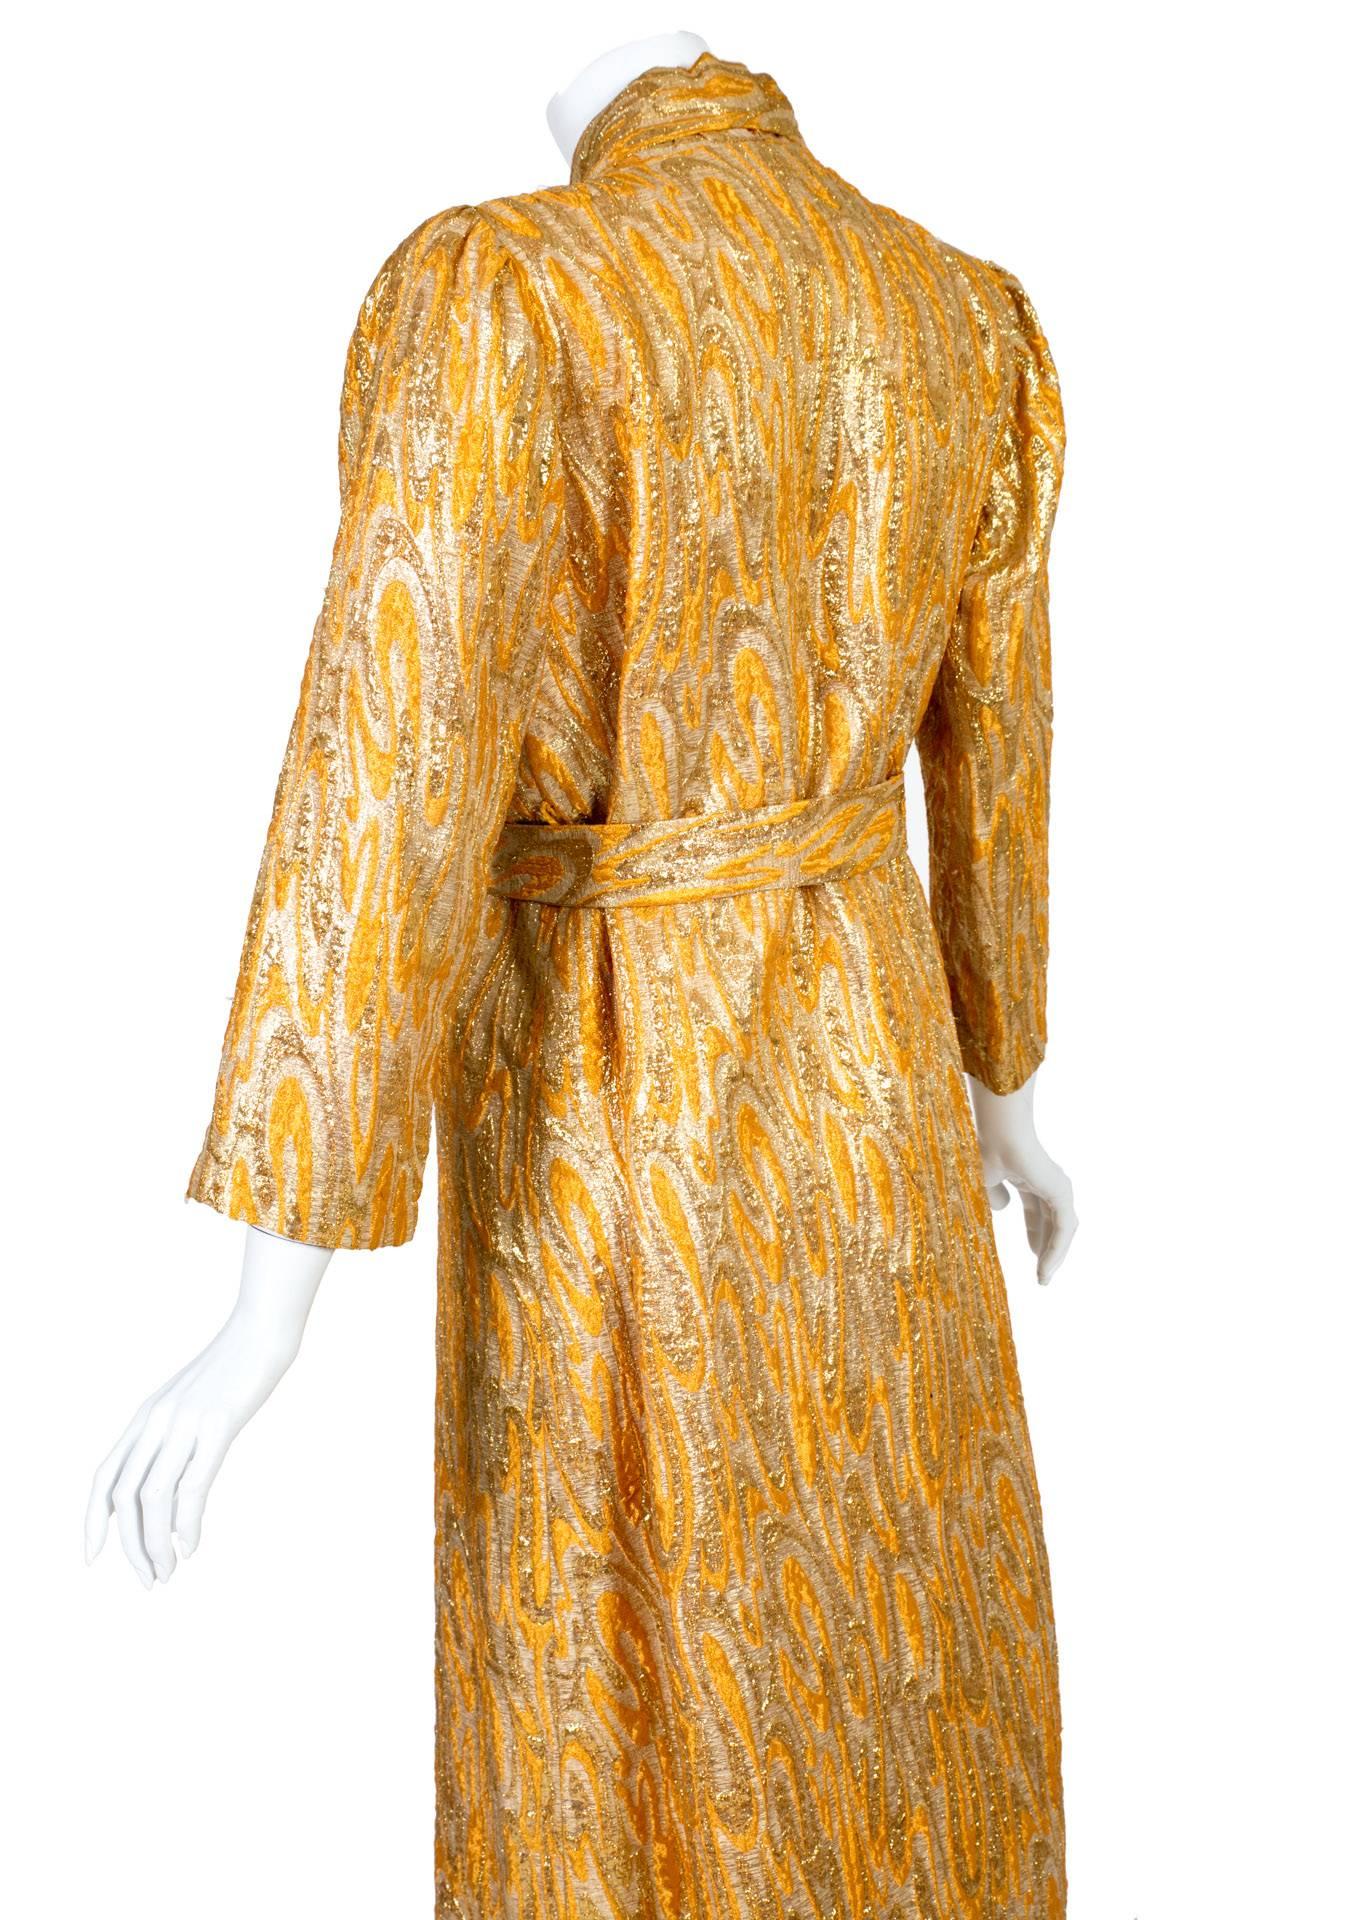  Oscar de la Renta attributed Gold Apricot Metallic Brocade Evening Coat, 1960s  3